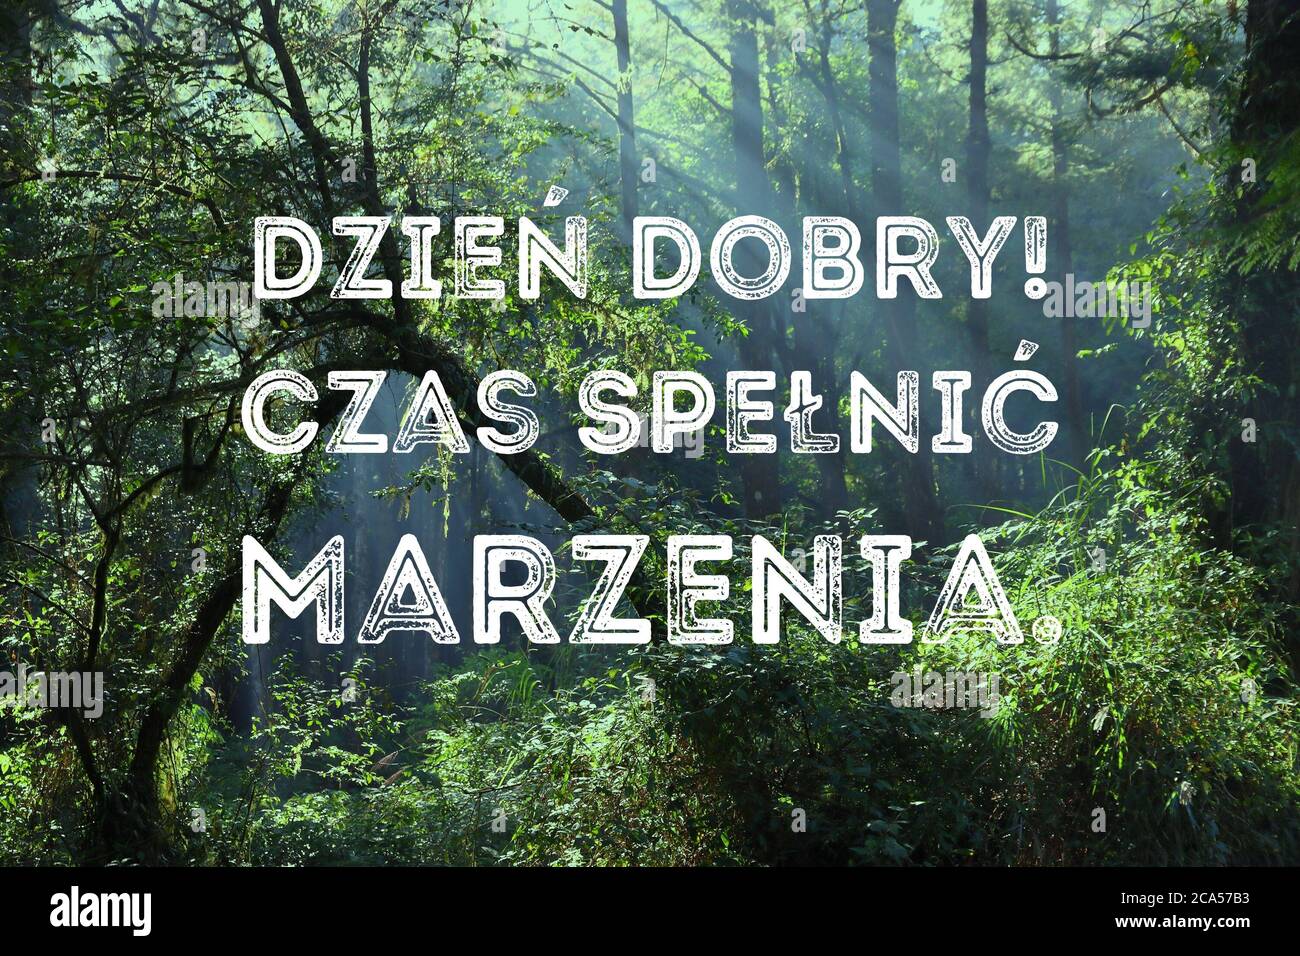 Dzien dobry, czas spelnic marzenia (Bonjour, le temps de réaliser des rêves en langue polonaise). Affiche de motivation en polonais. Banque D'Images